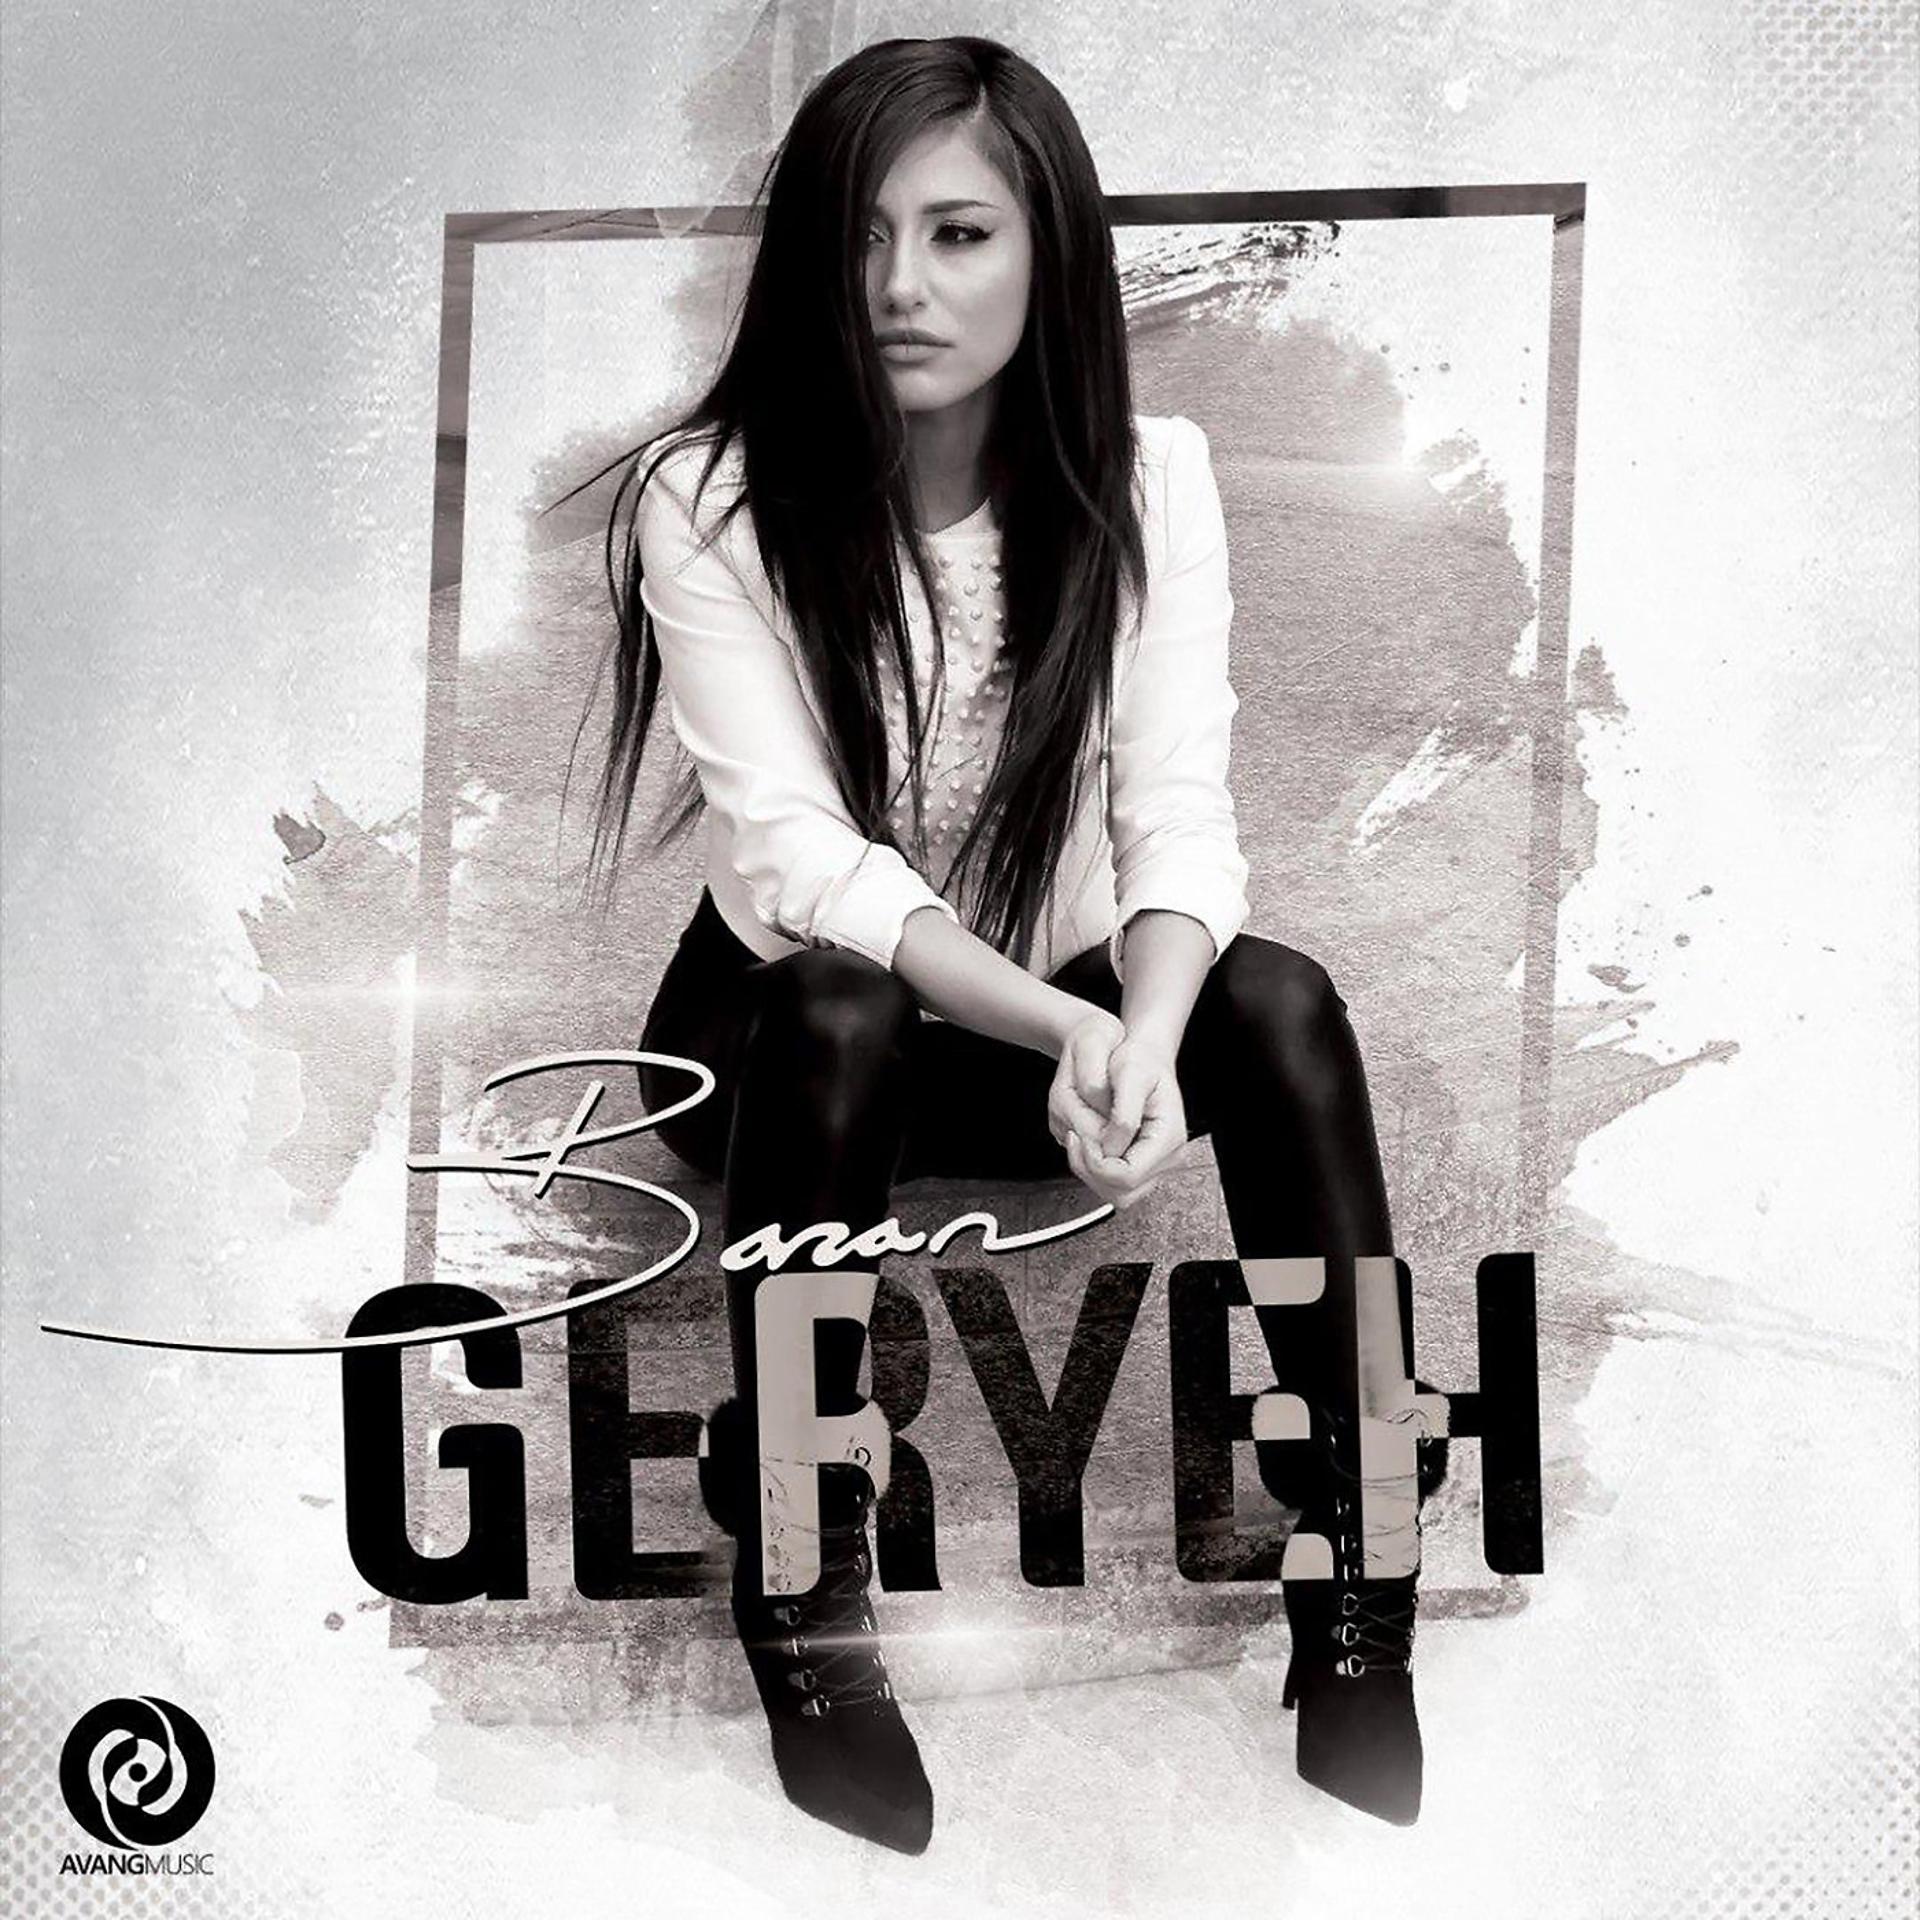 Постер альбома Geryeh